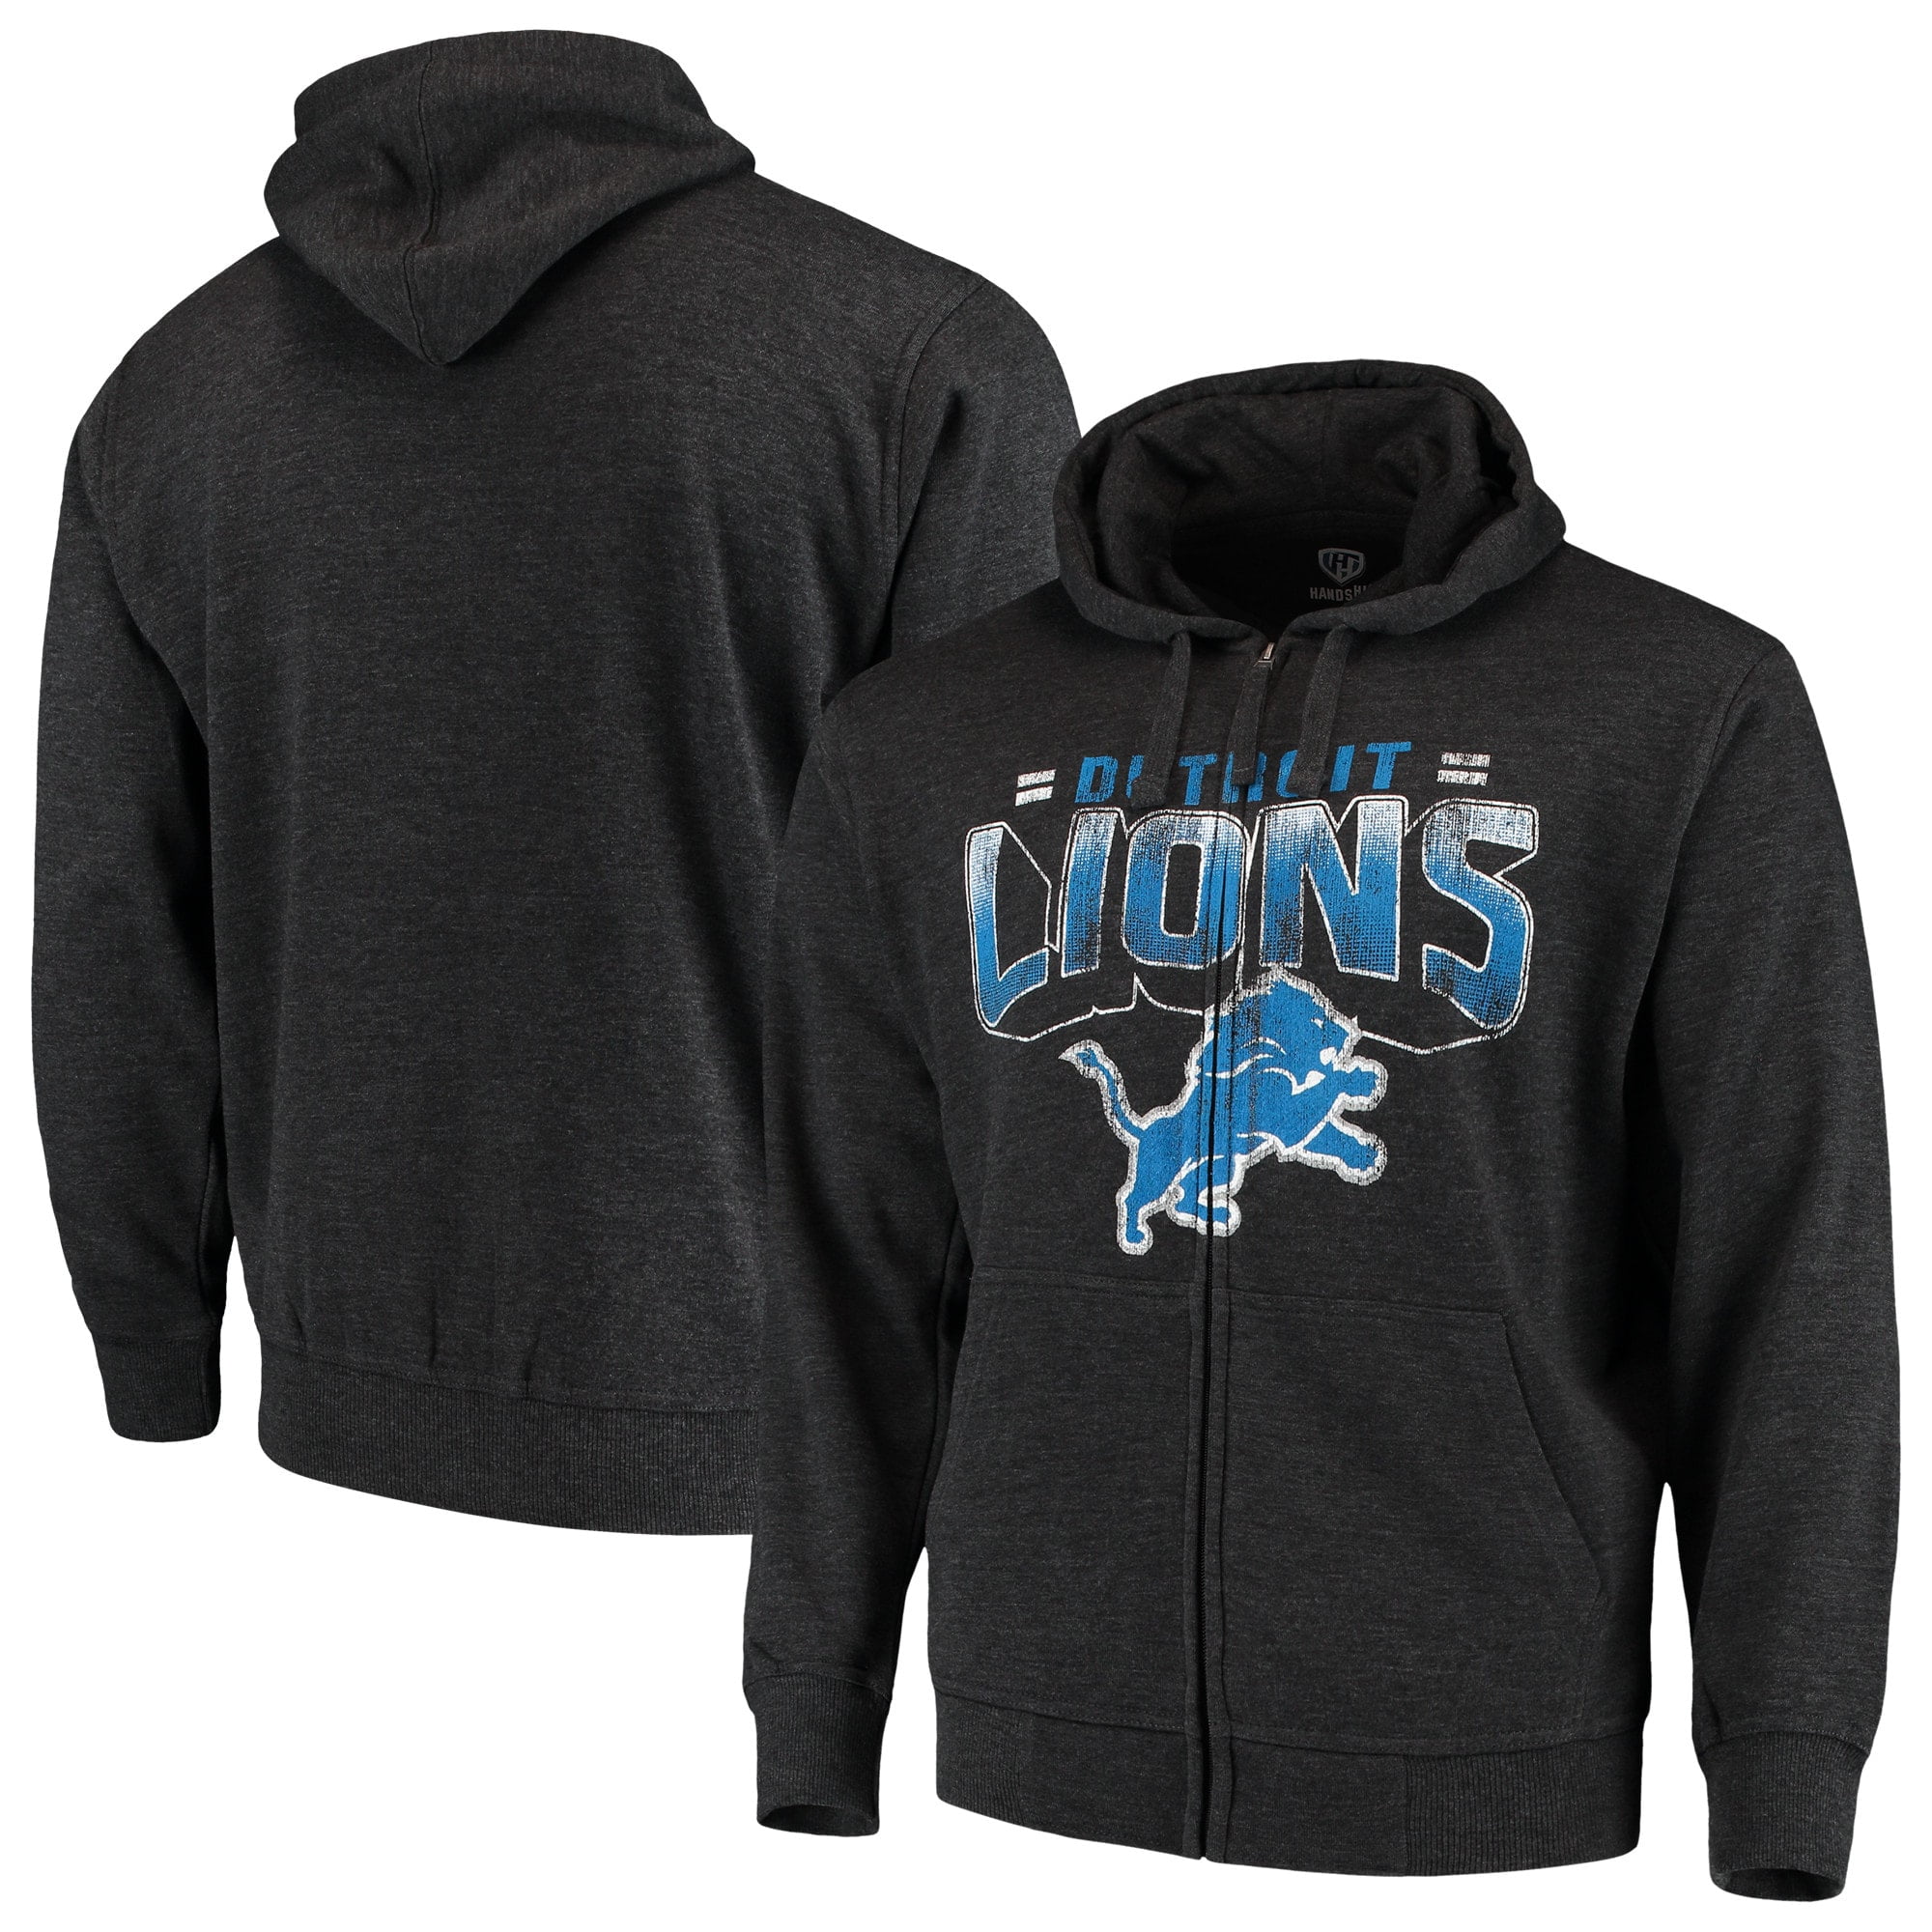 detroit lions hoodies cheap